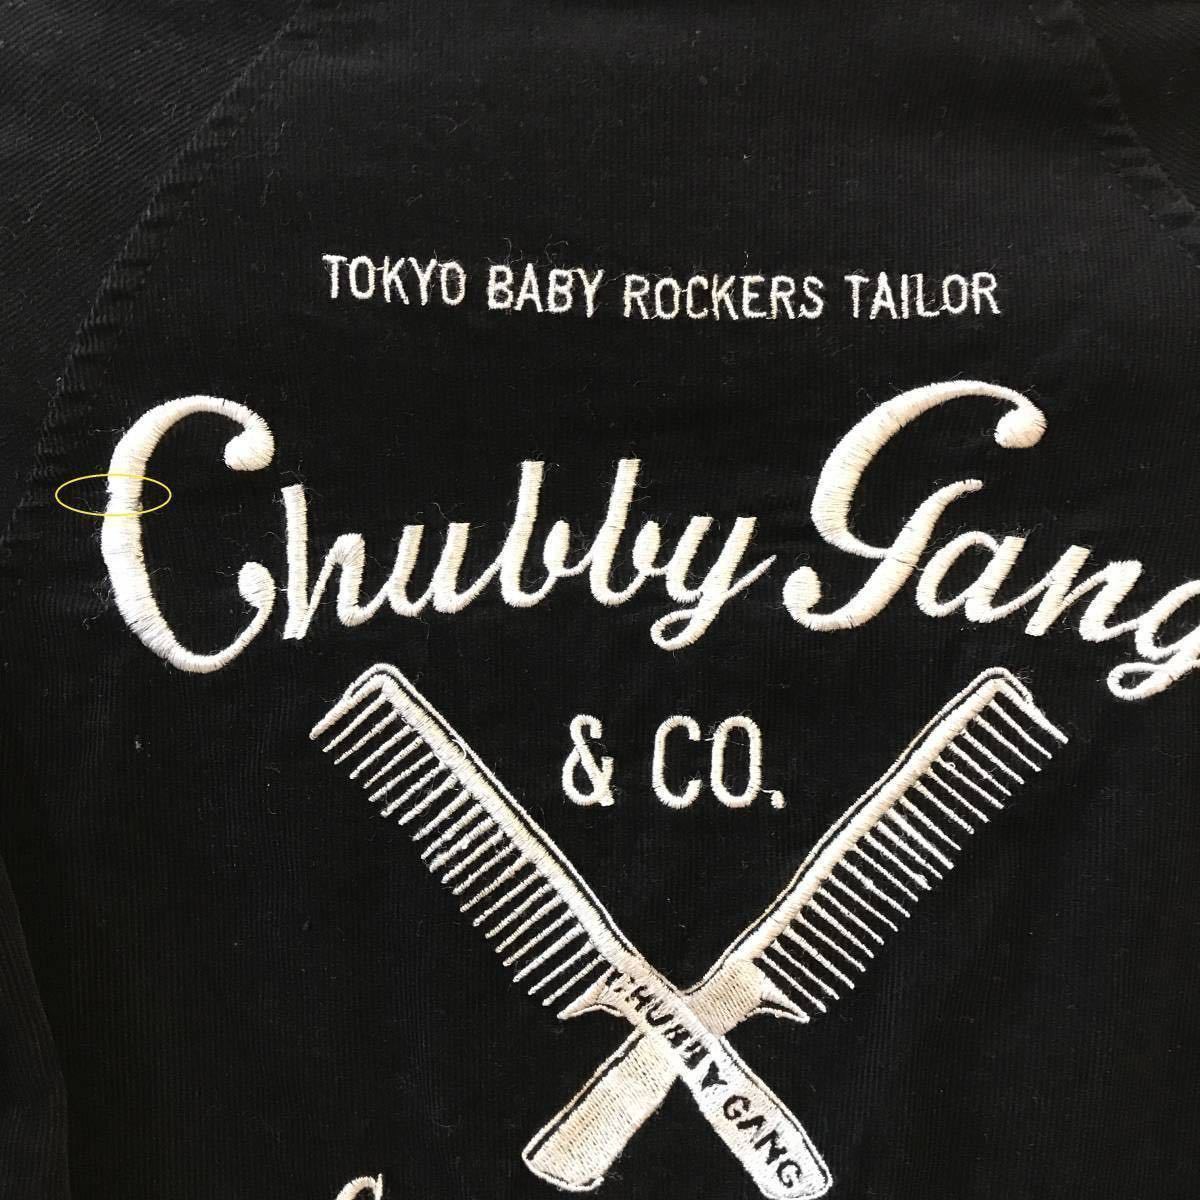  Chubbygang CHUBBYGANG corduroy jacket 120 black black jumper blouson child clothes man 